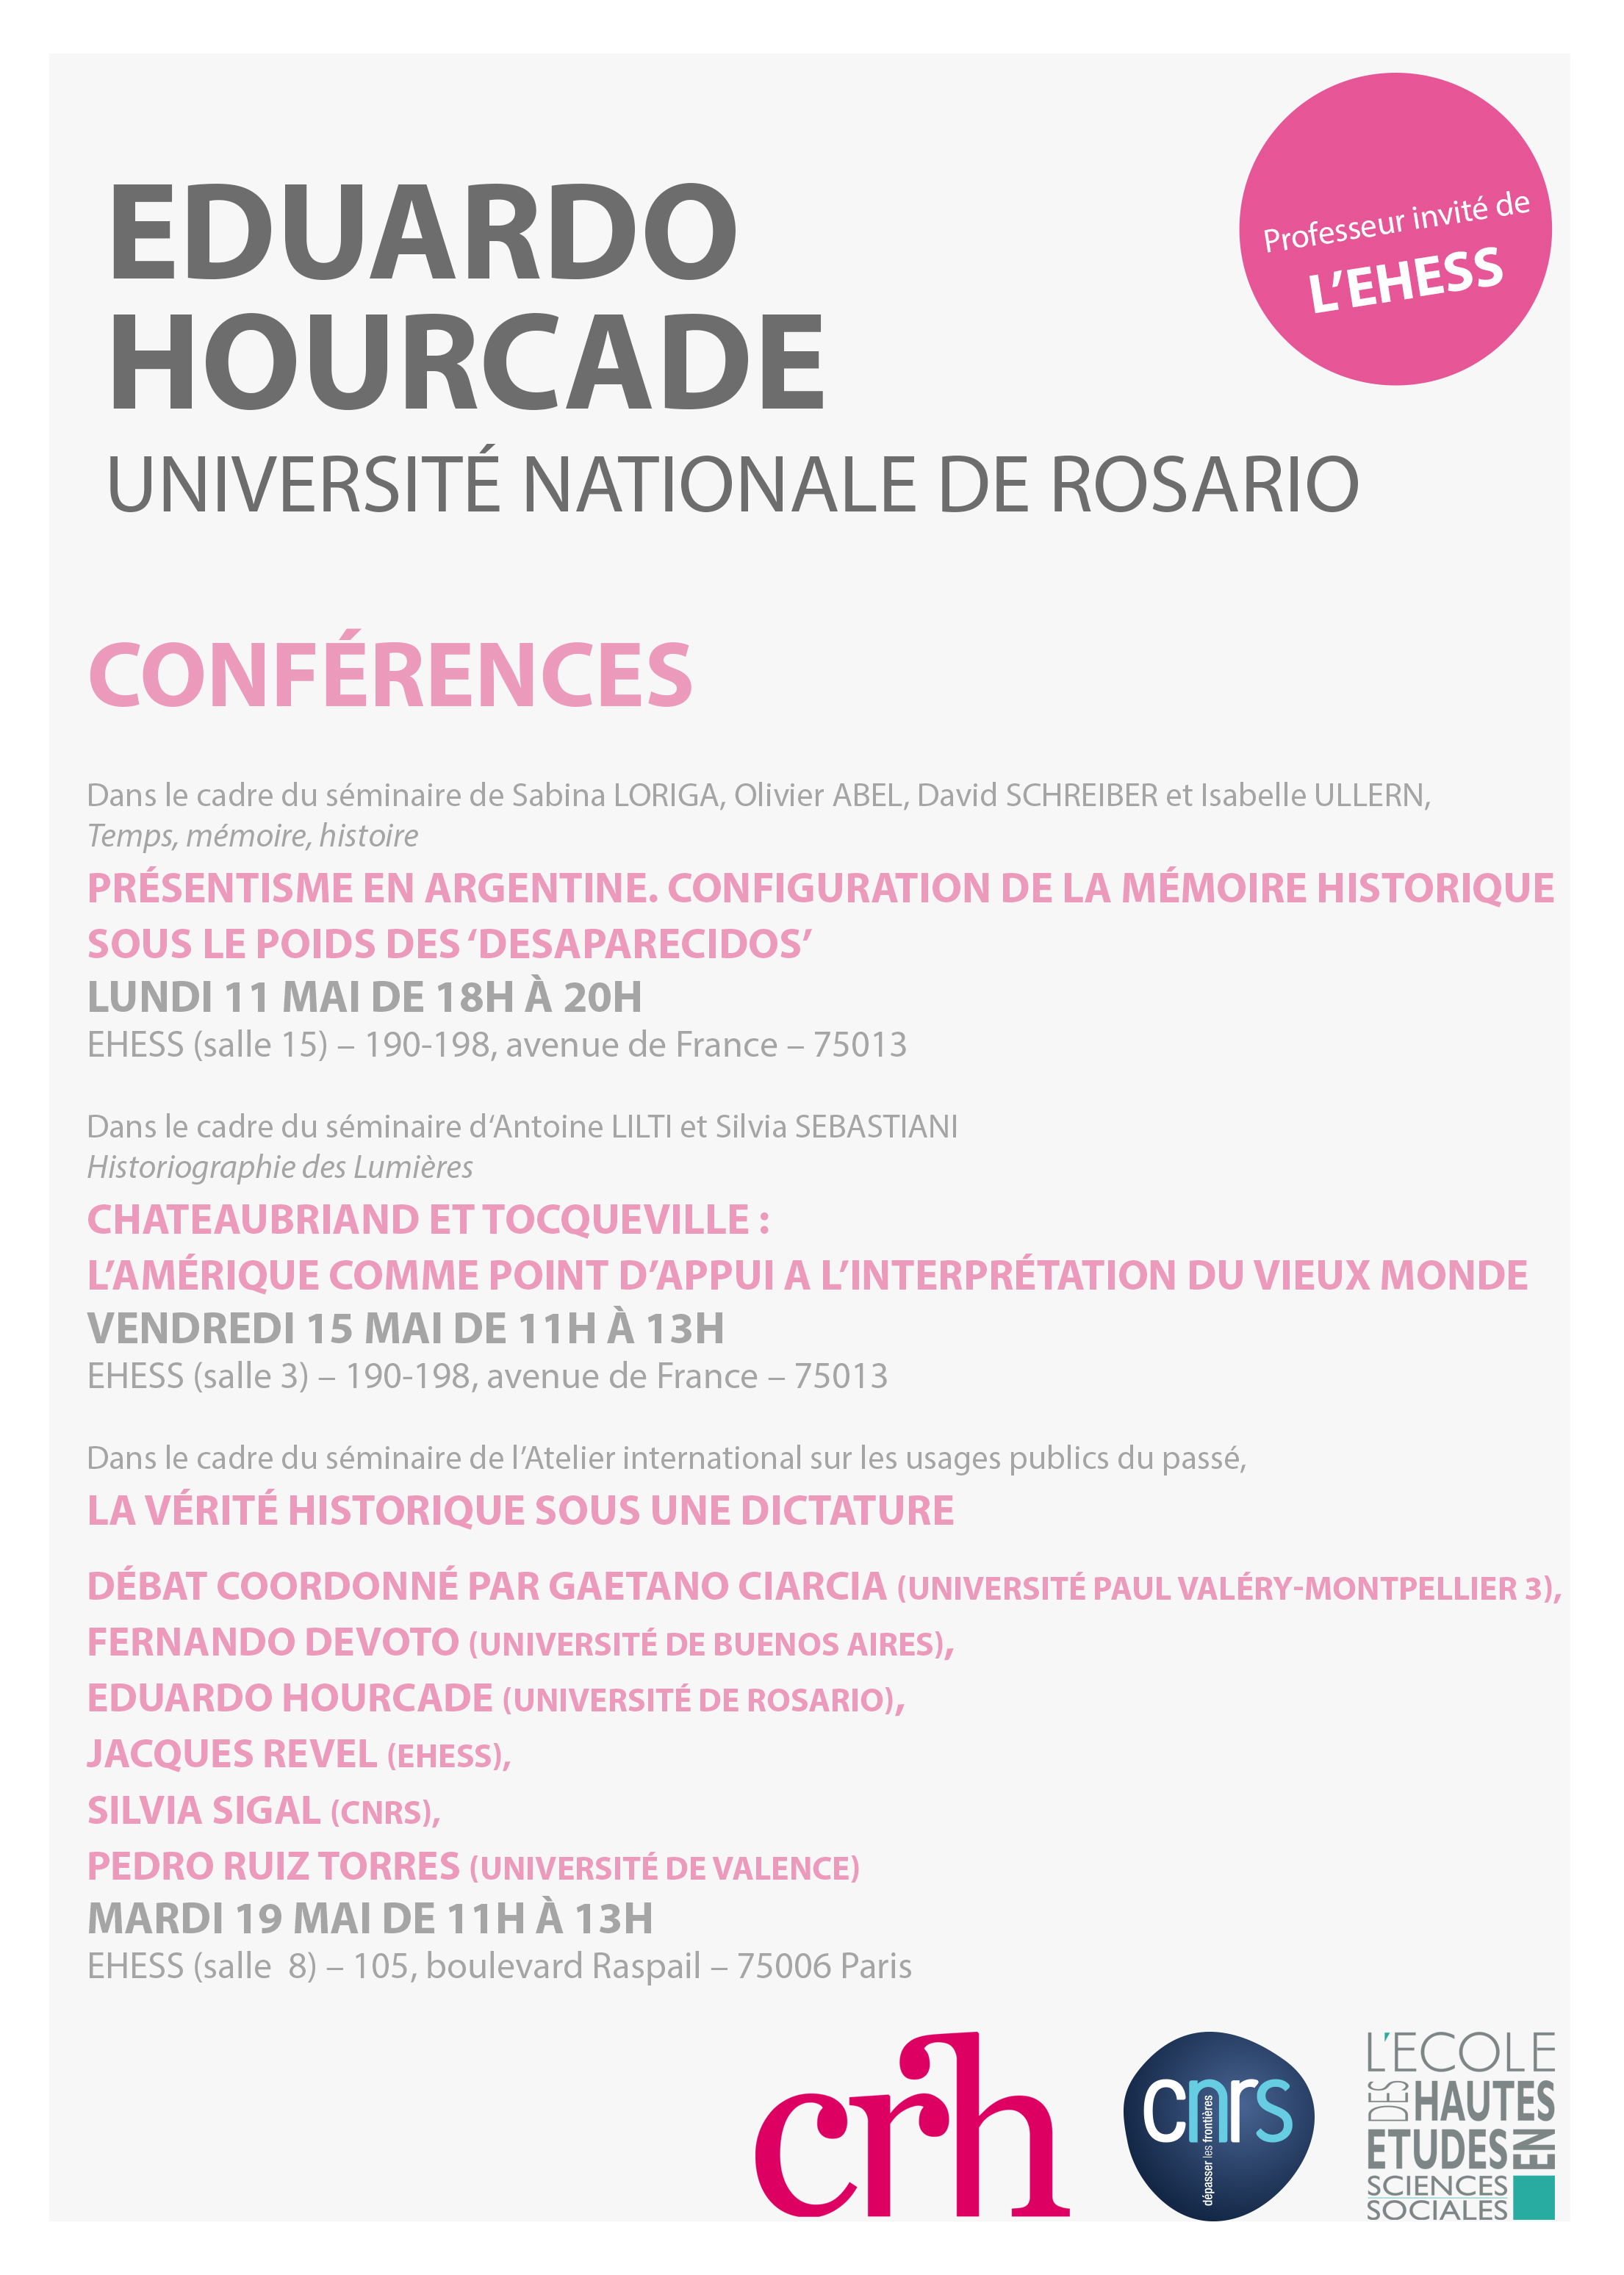 Conférences d'Eduardo Hourcade